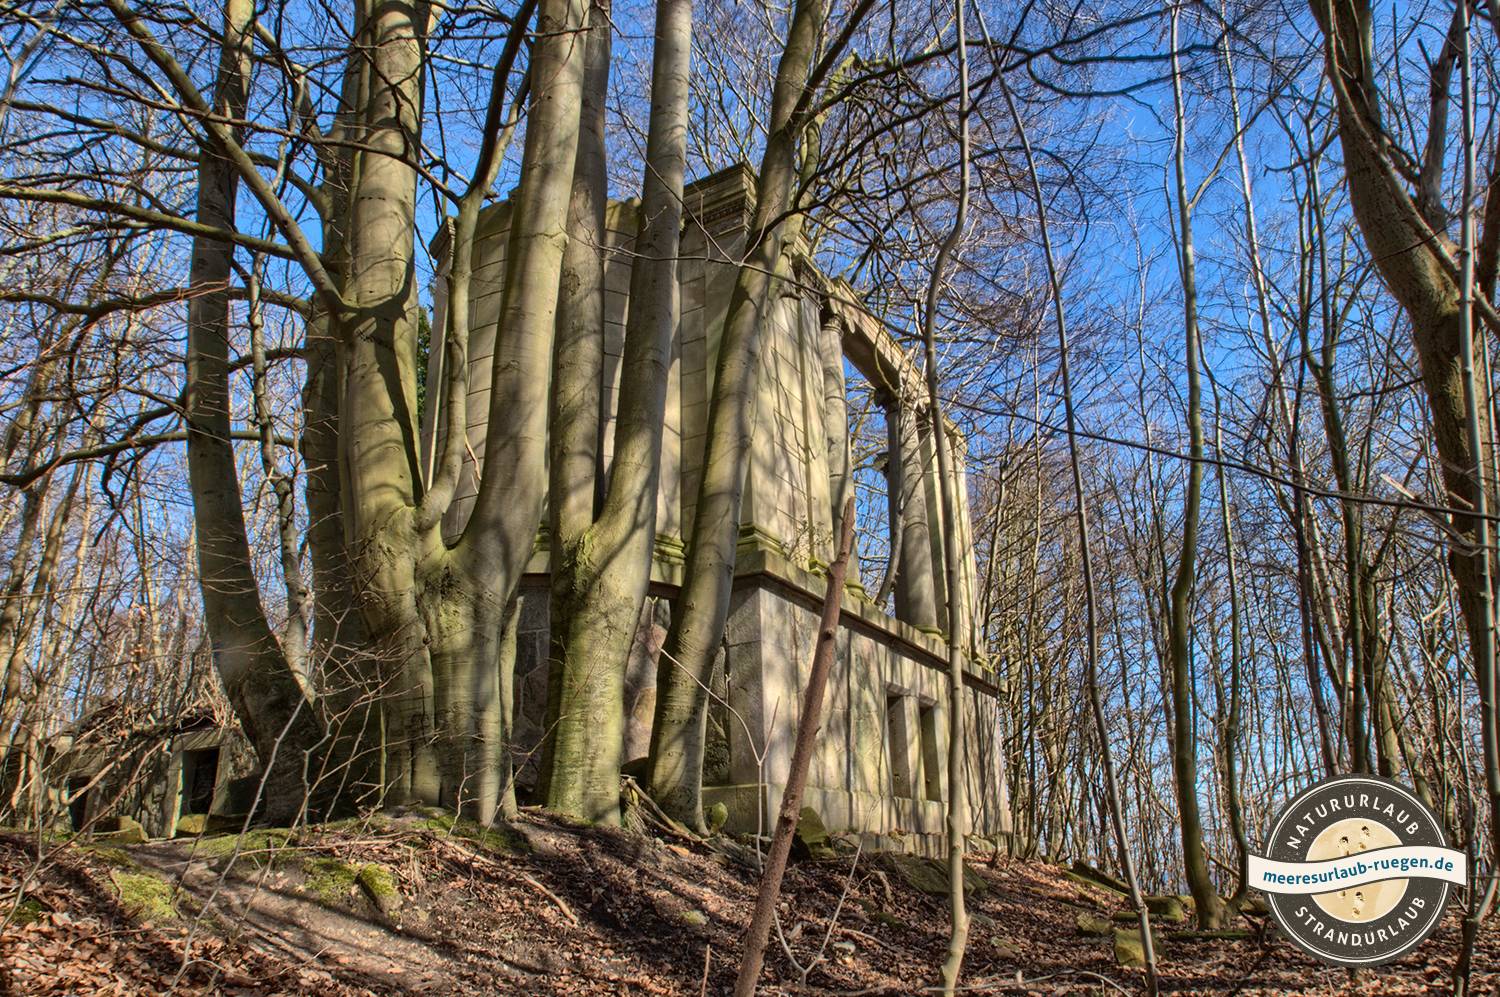 Die Ruine des Schlosses in Sassnitz / Dwasieden, Geheimste Fotospots